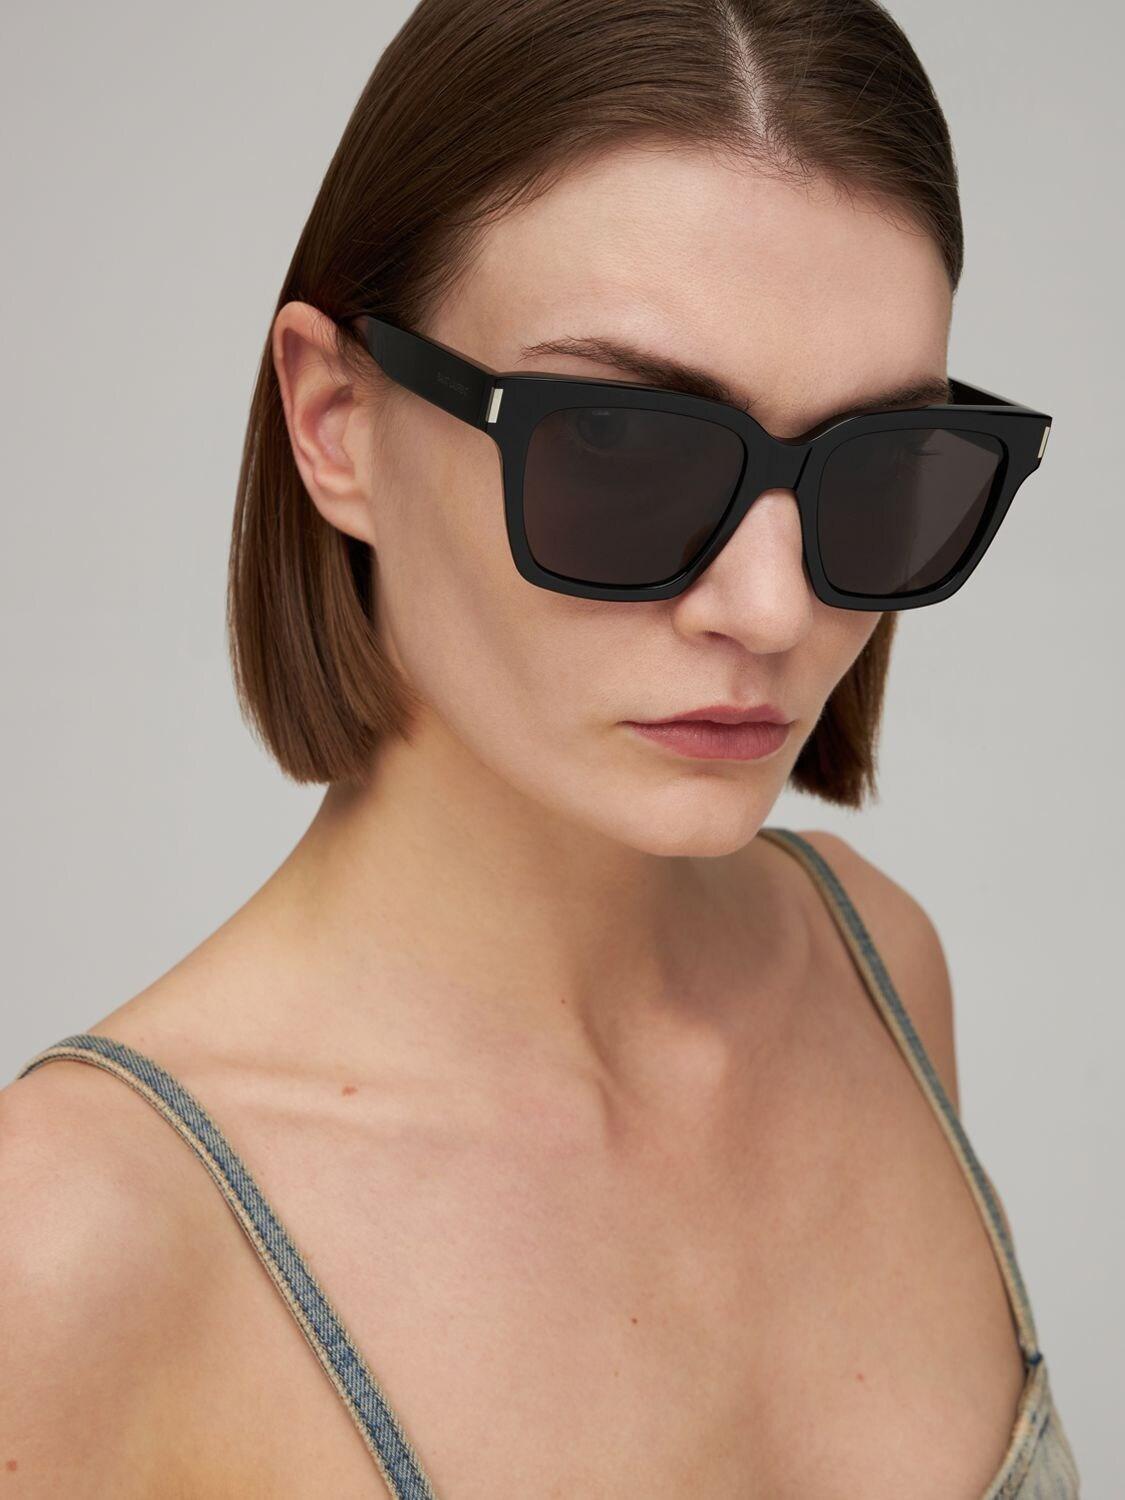 Saint Laurent SL 507 Rectangular Sunglasses